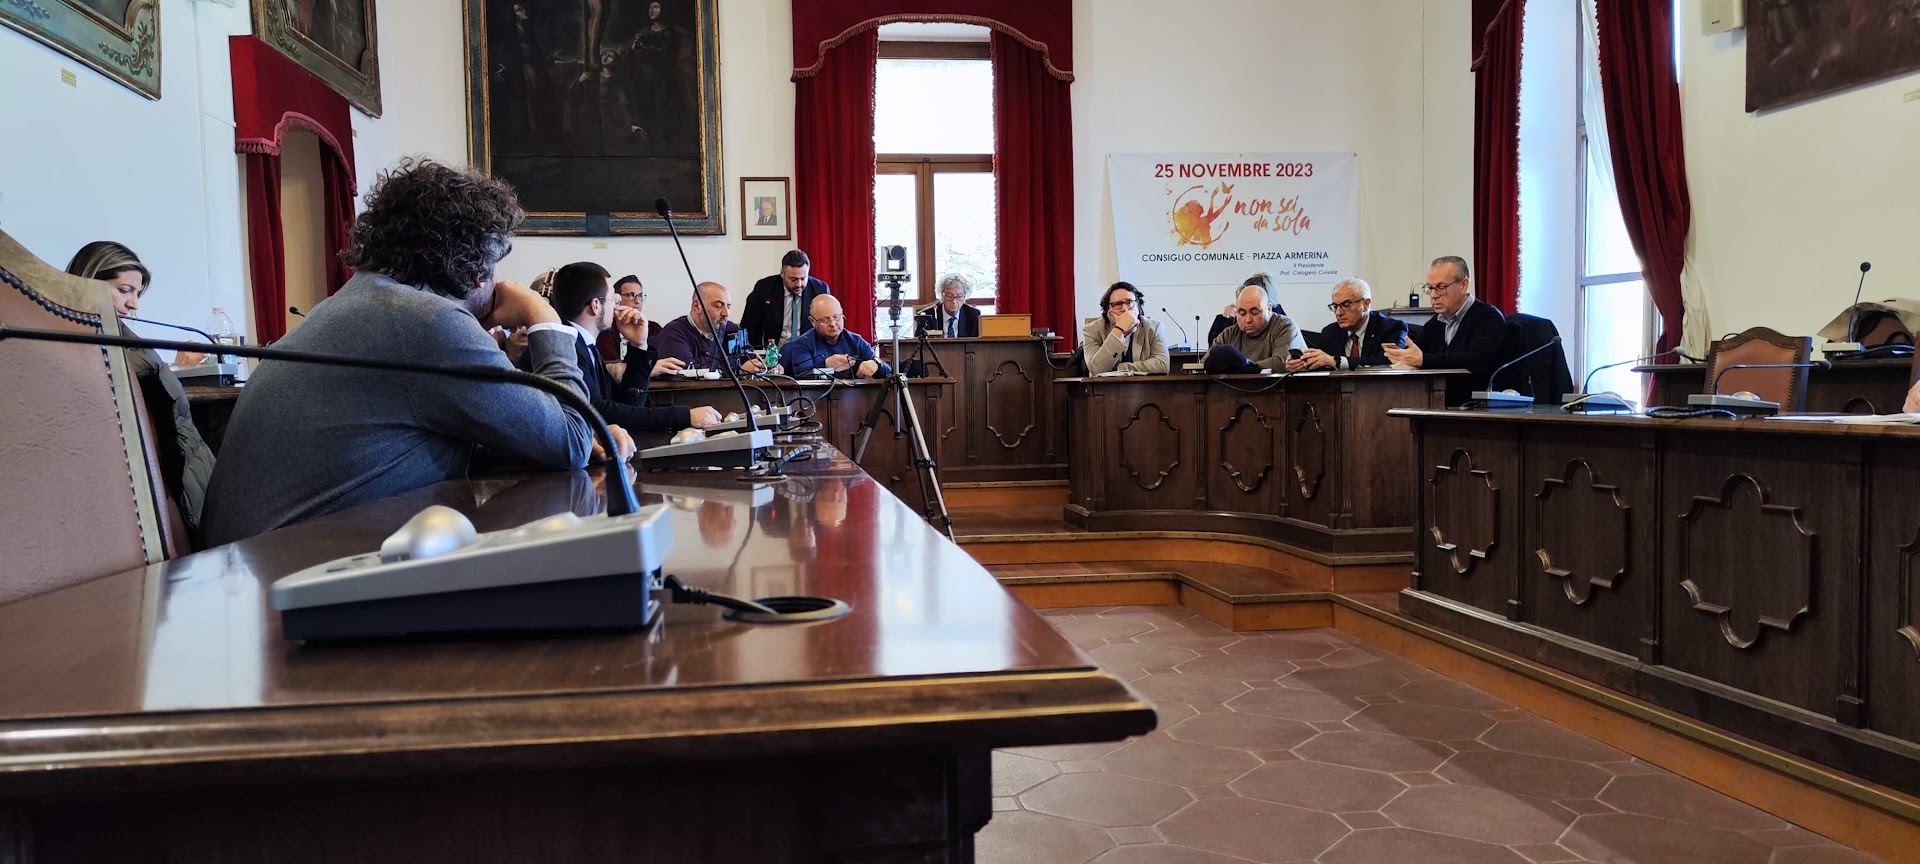 Il consiglio comunale di Piazza Armerina torna a riunirsi il 14 maggio. L’ordine del giorno